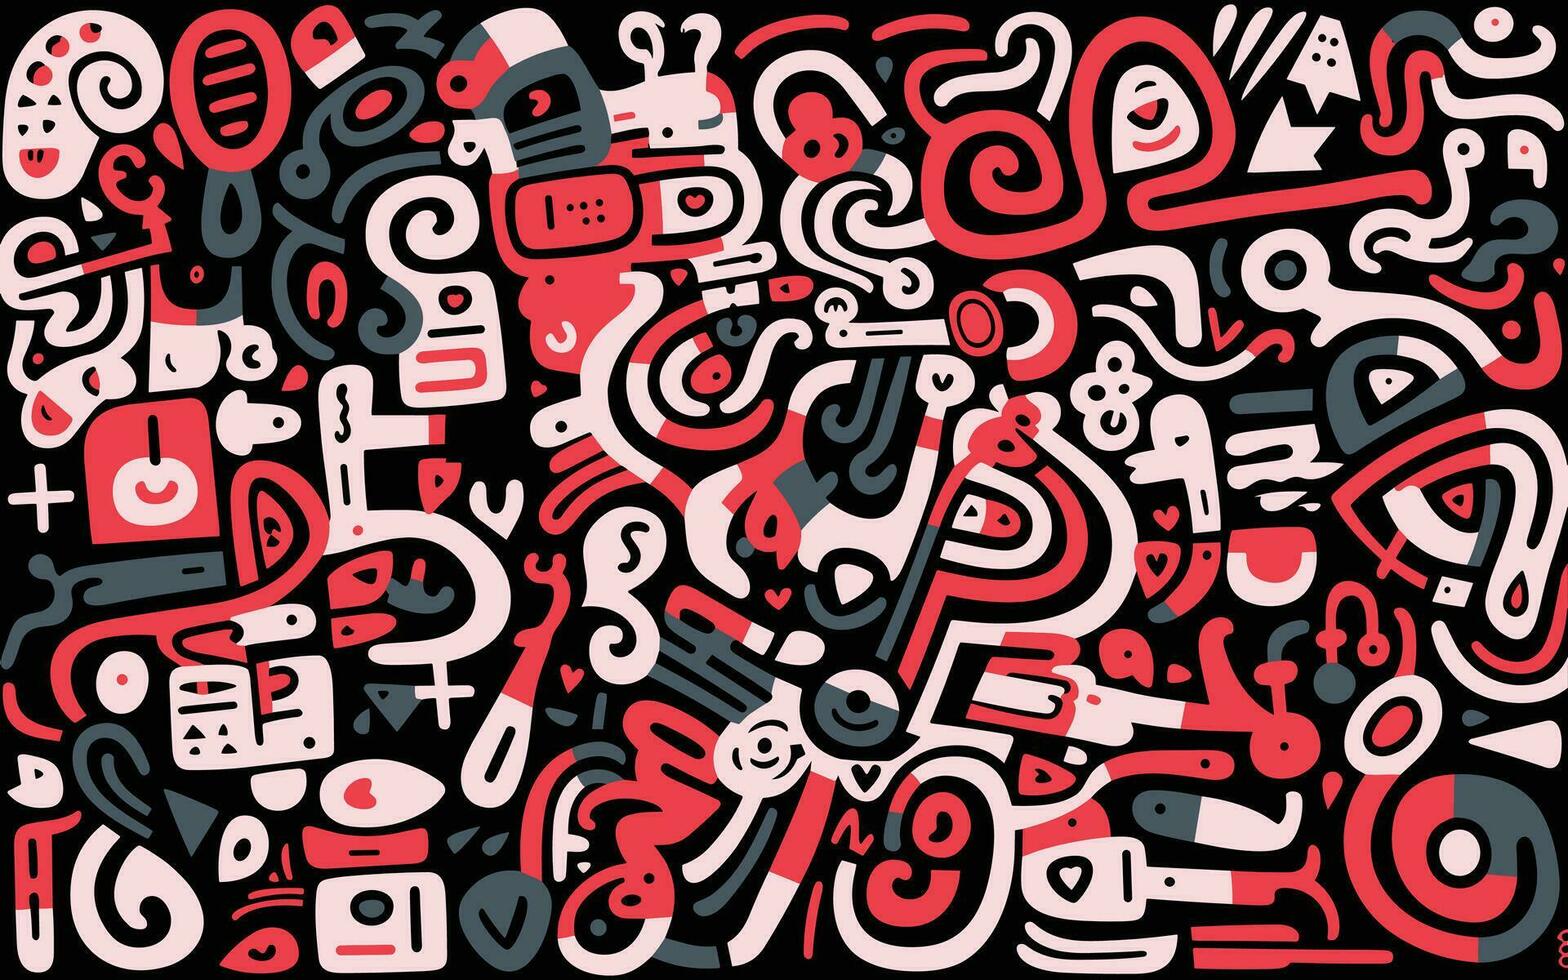 grand blanc et rouge abstrait modèle, dans le style de semblable à un dessin animé Les figures, noir arrière-plan, mésoaméricain influencer, ondulé ligne style, simpliste personnages, ressemblant à un graffiti caractères vecteur